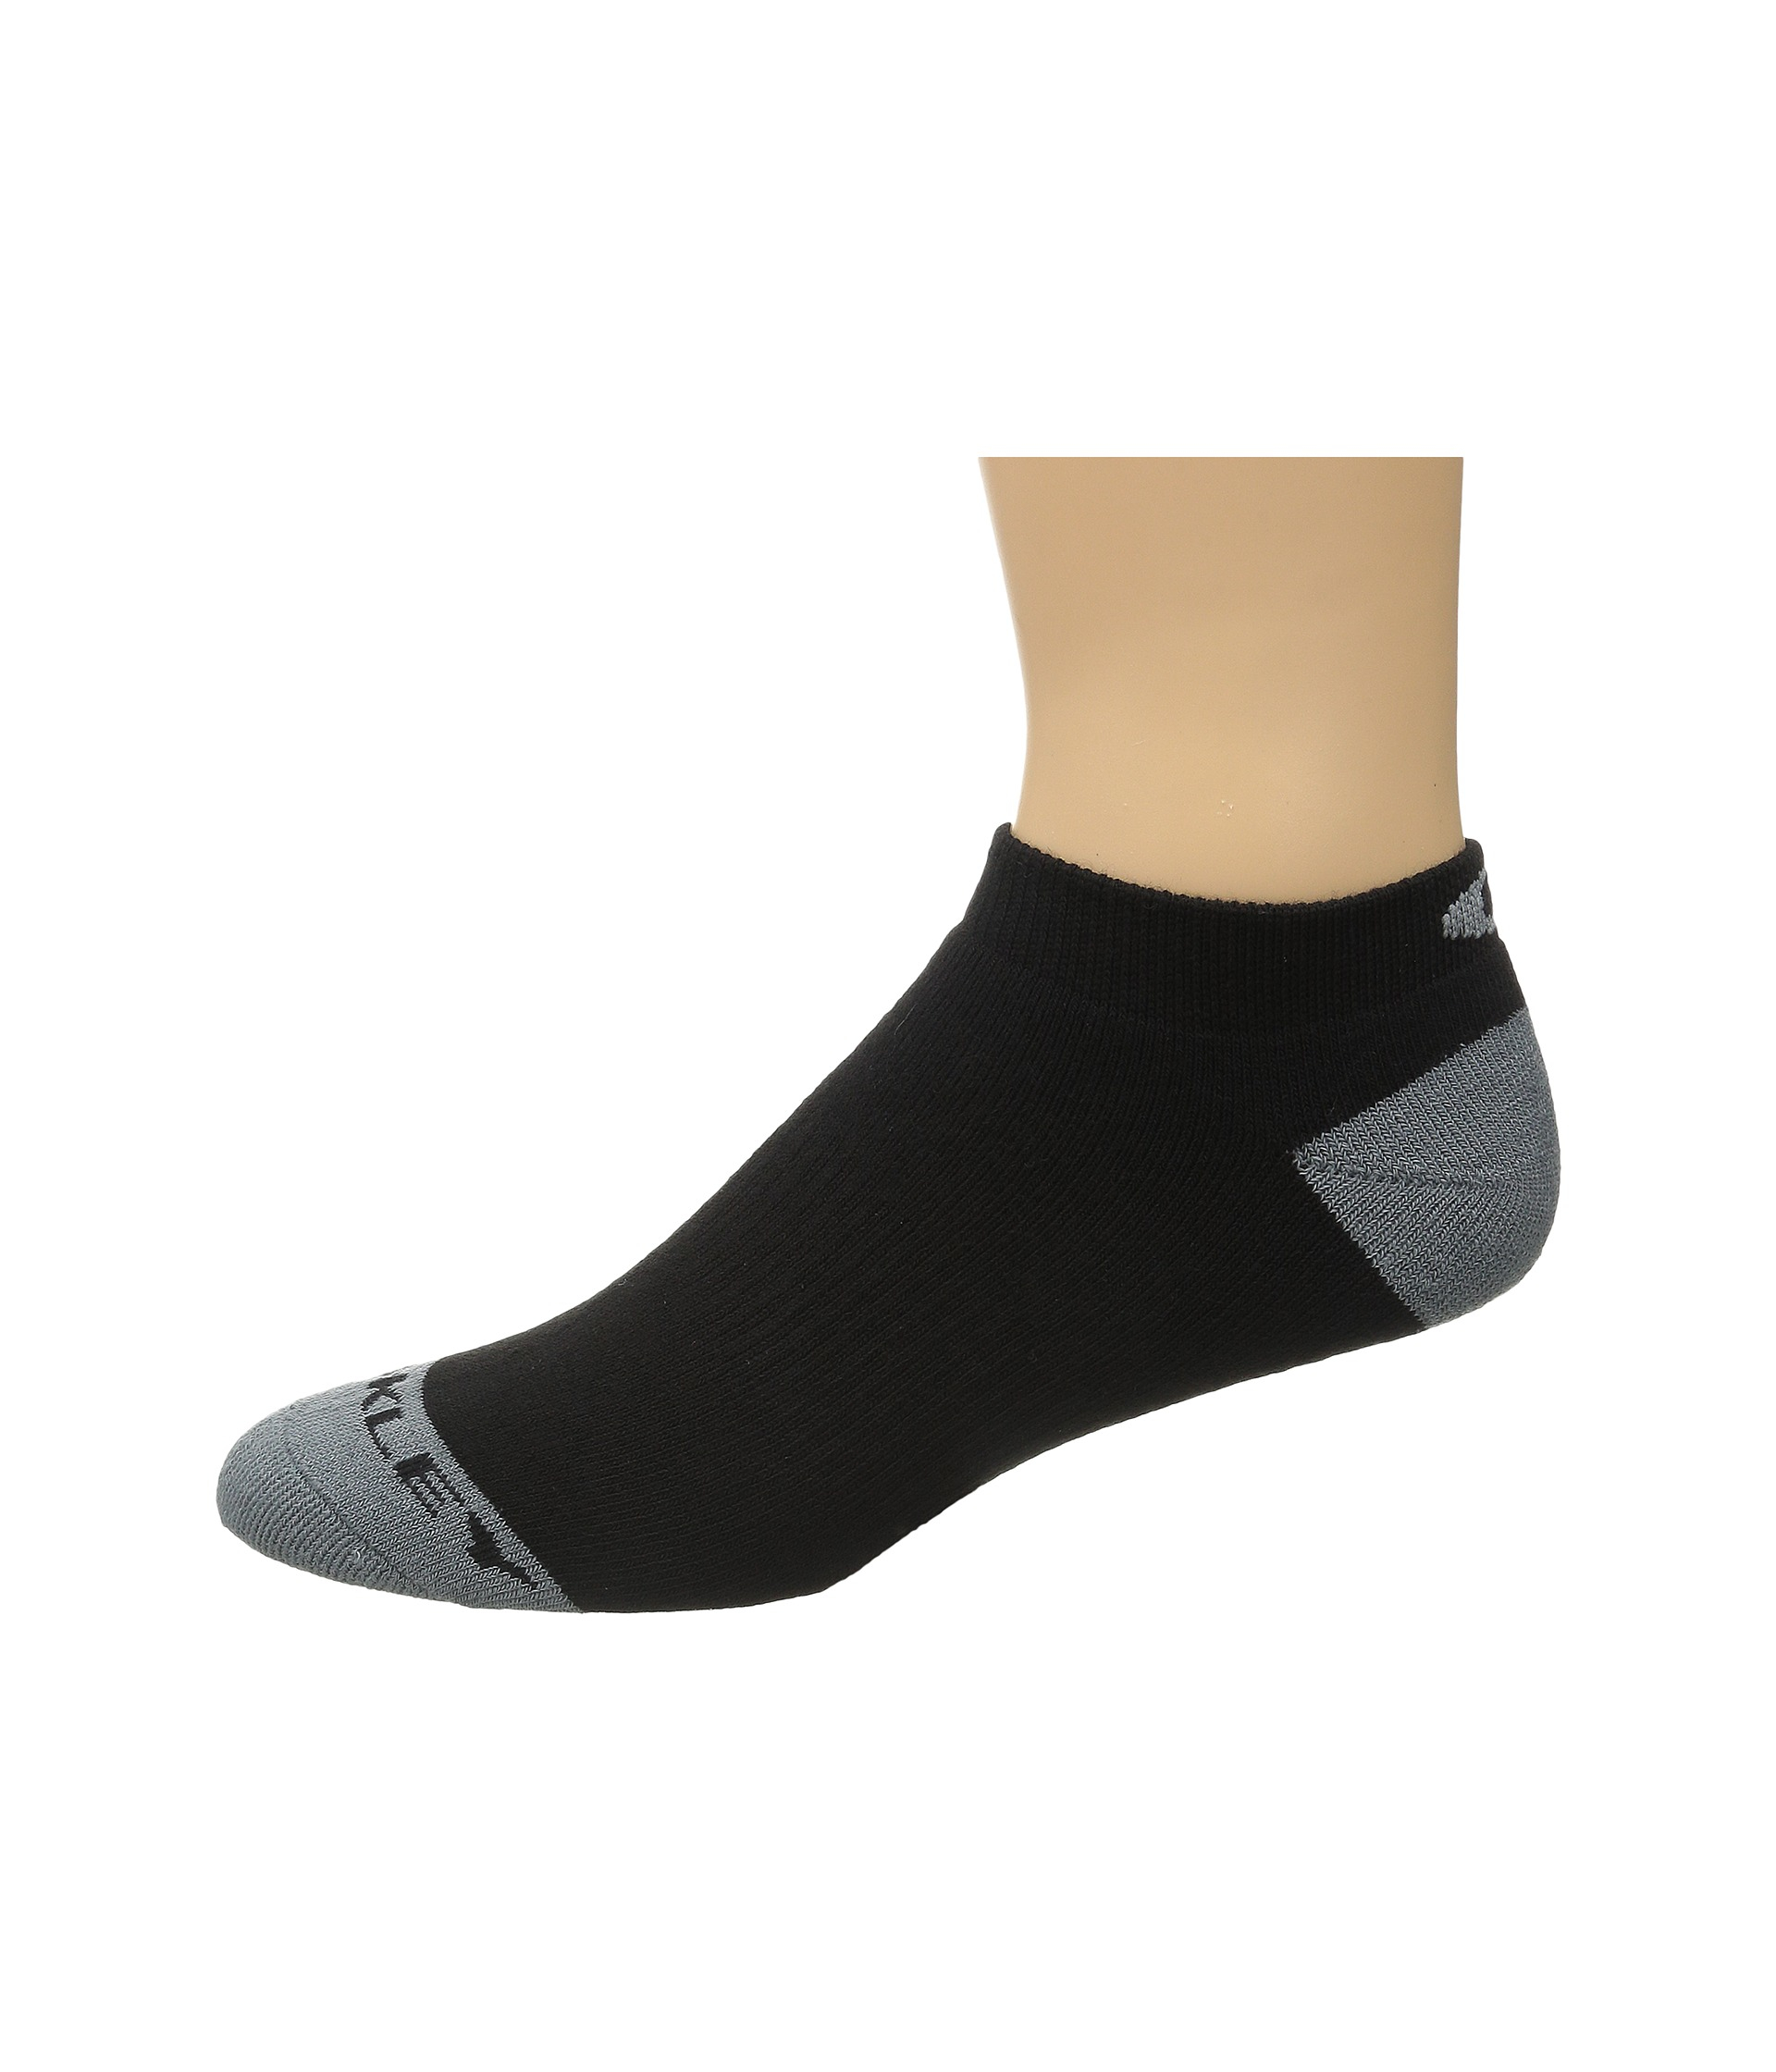 oakley performance socks